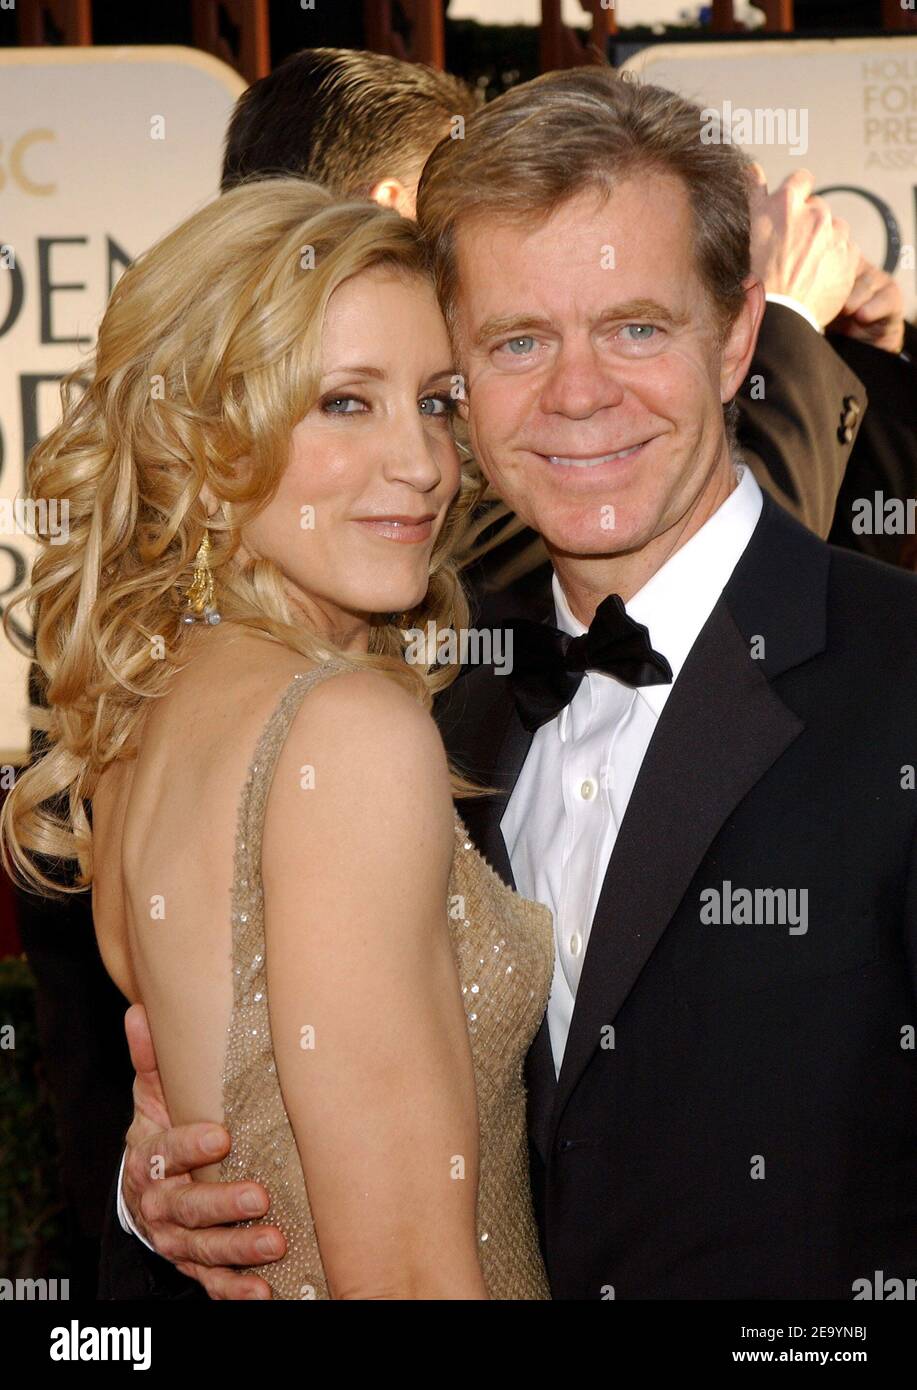 Felicity Huffman und ihr Ehemann William H. Macy kommen am 16. Januar 2005 bei den Annual Golden Globe Awards 62nd in Los Angeles, CA, USA an. Foto von hahn-Khayat/ABACA Stockfoto